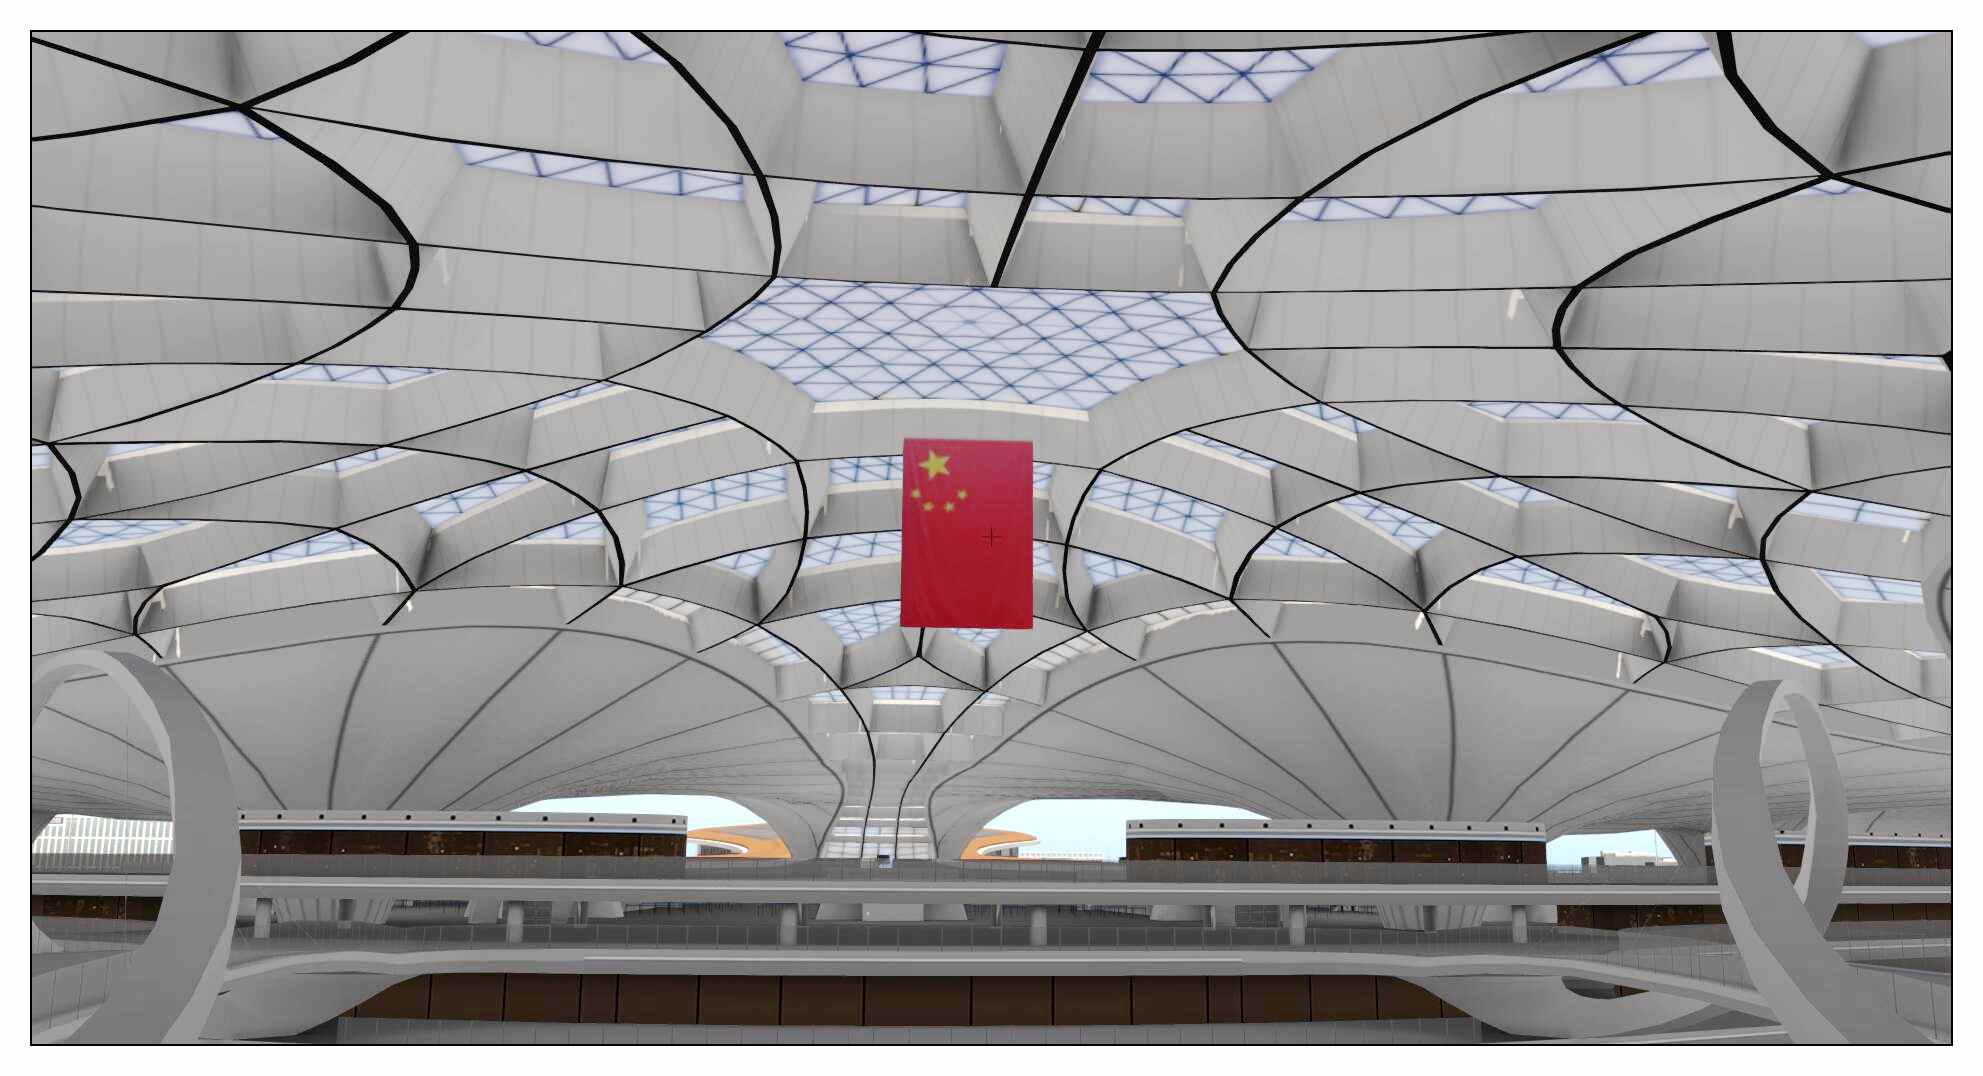 【X-Plane】ZBAD北京大兴国际机场-正式发布-2403 